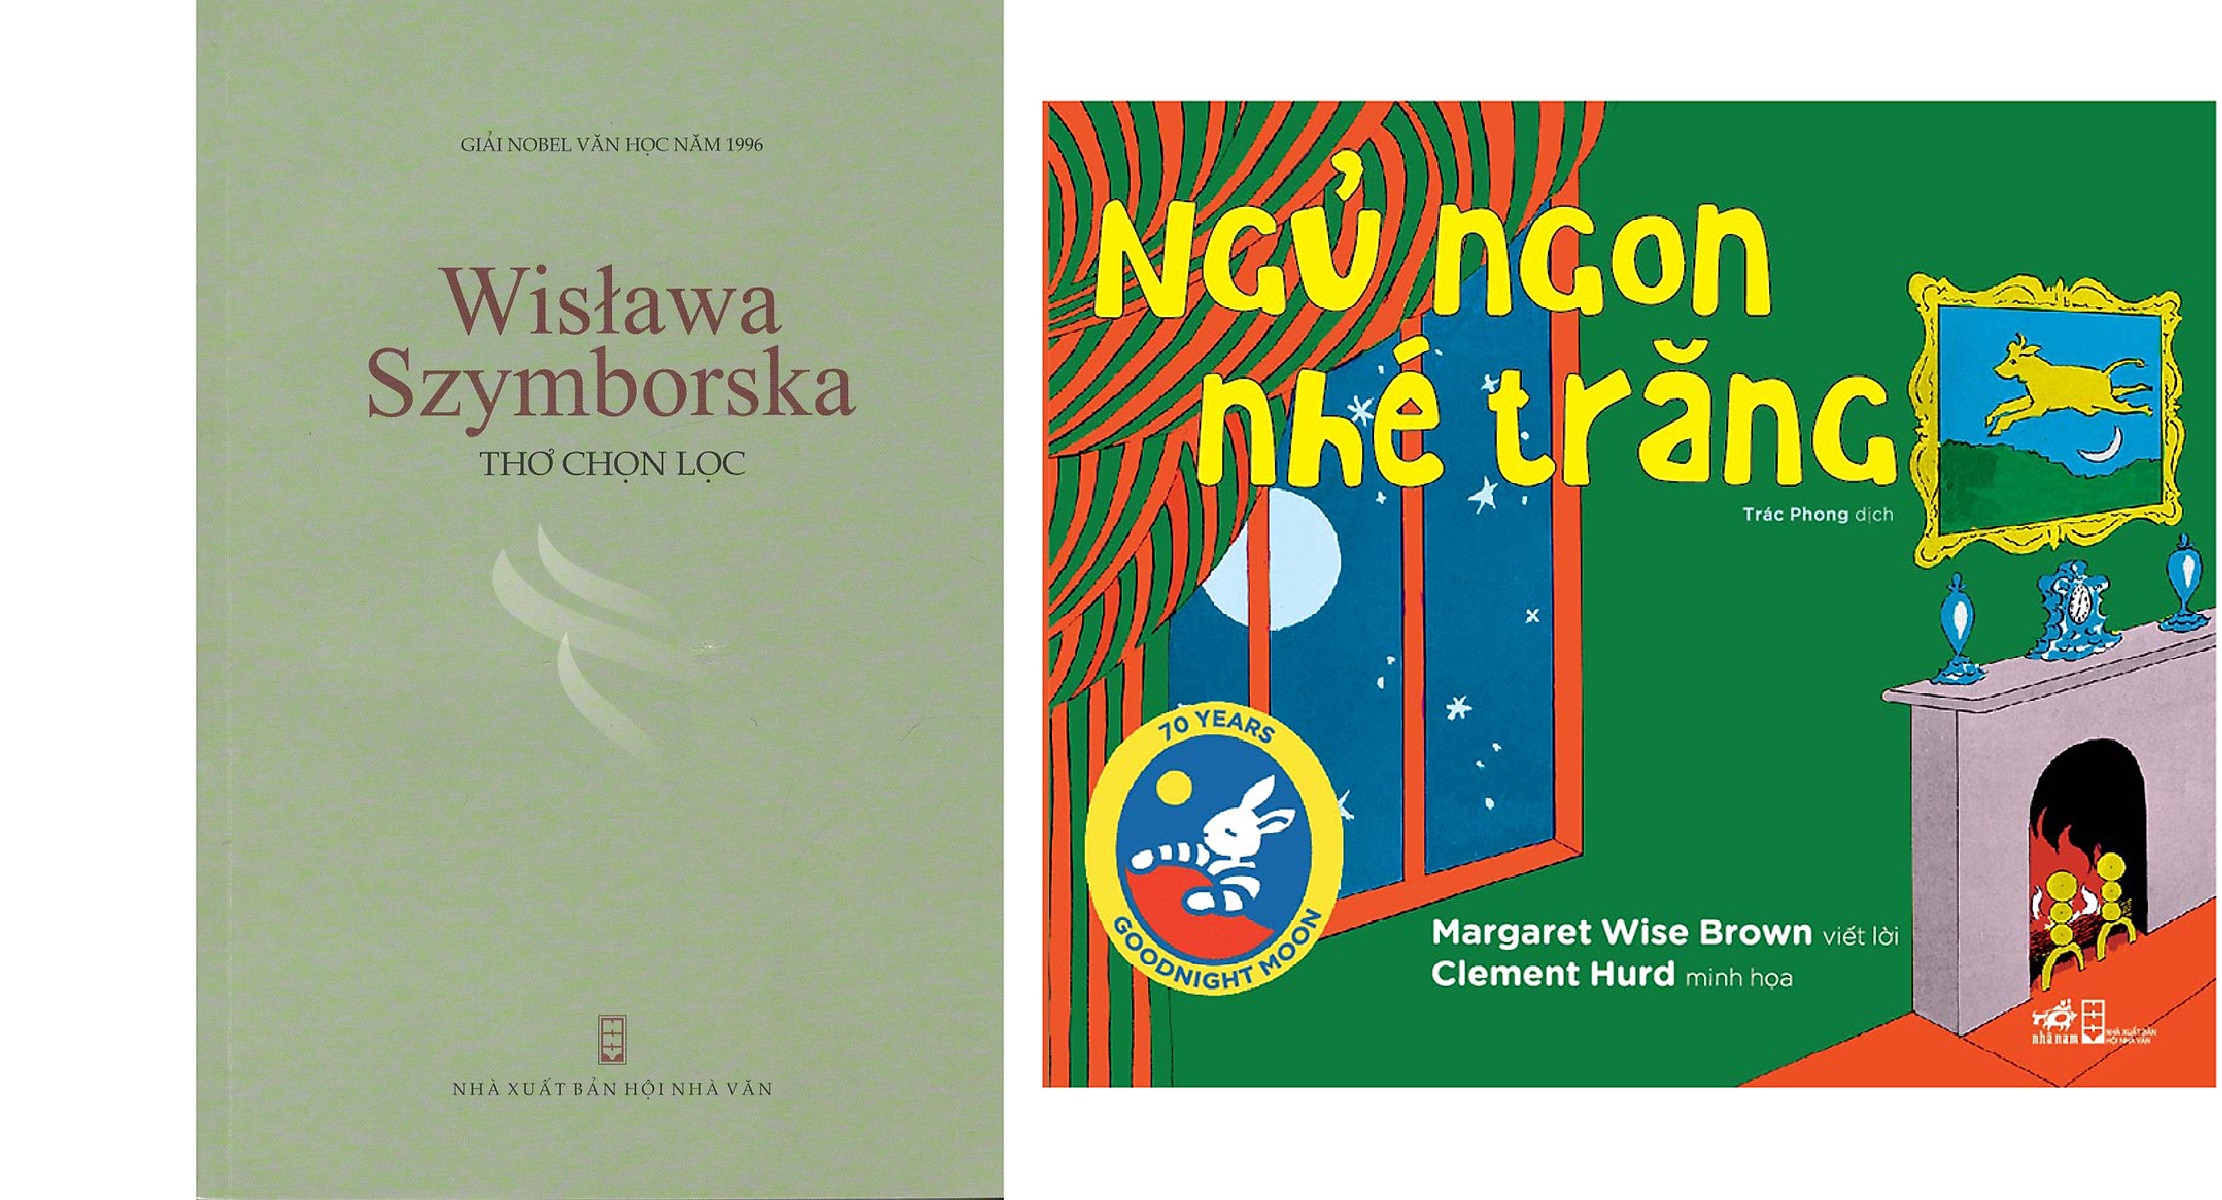 Combo Ngủ Ngon Nhé Trăng + Thơ Wislawa Szymborska